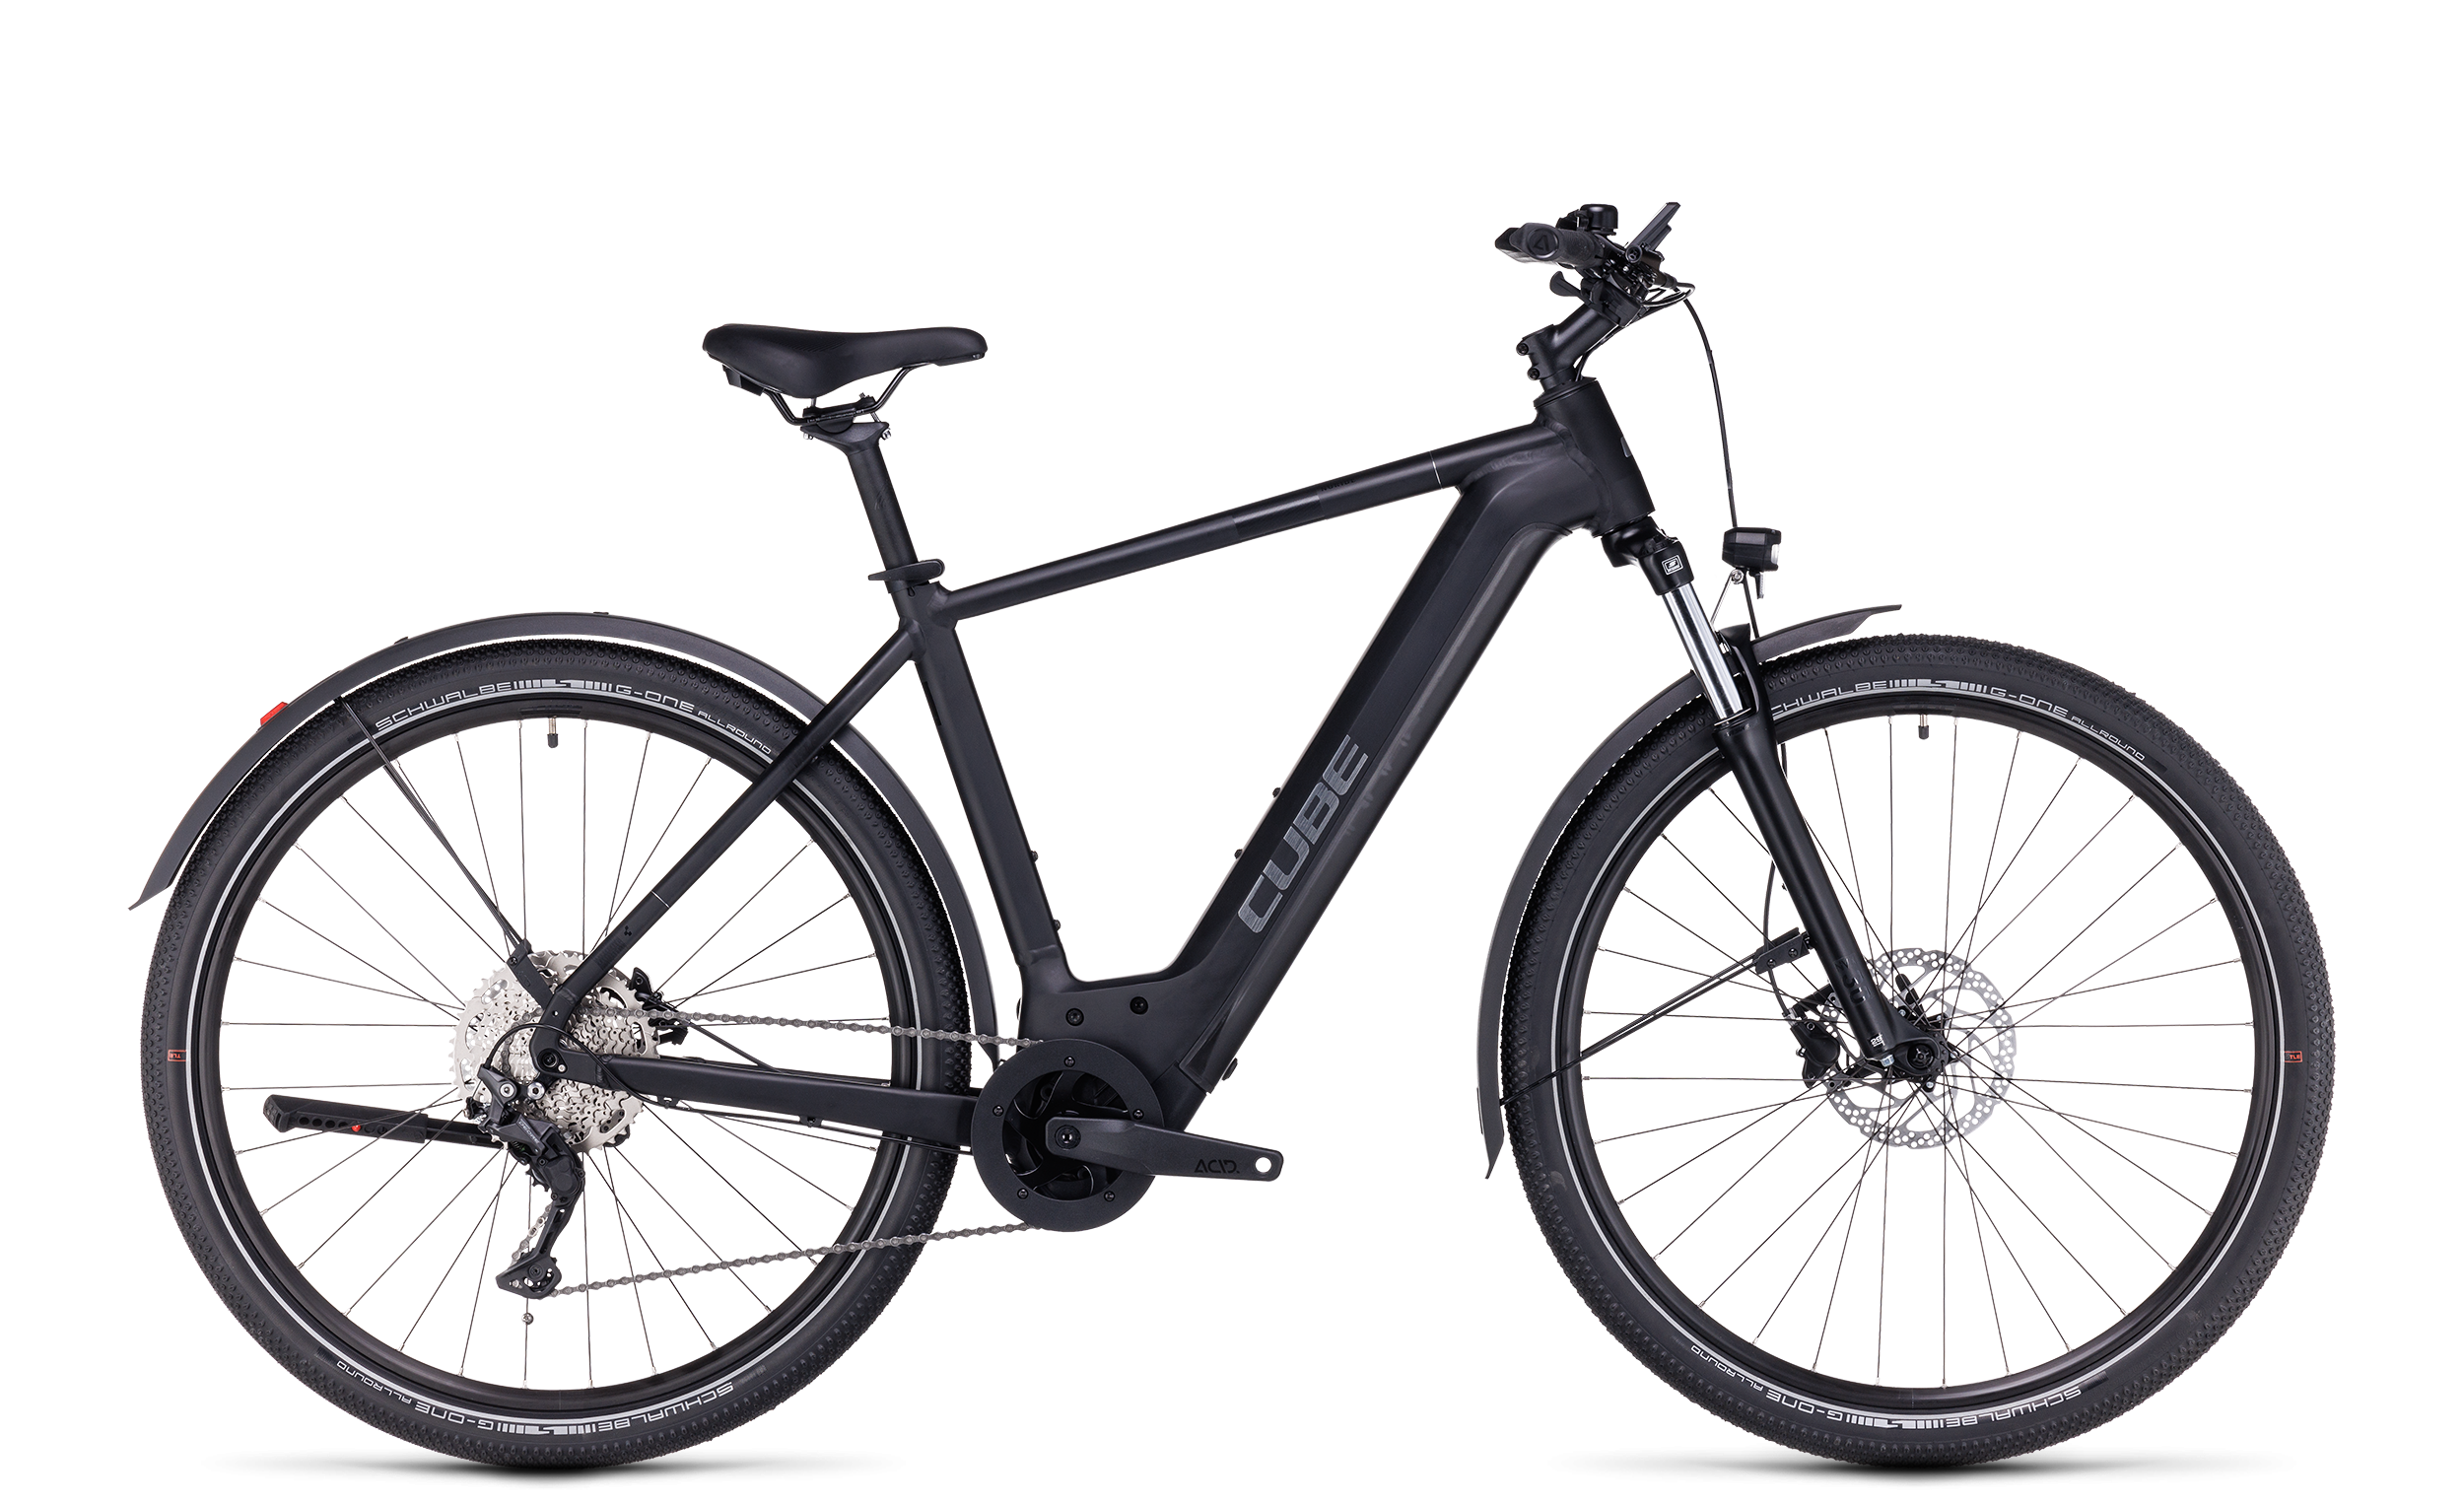 Béquille centrale double pied pour vélo VTT bicyclette en métal